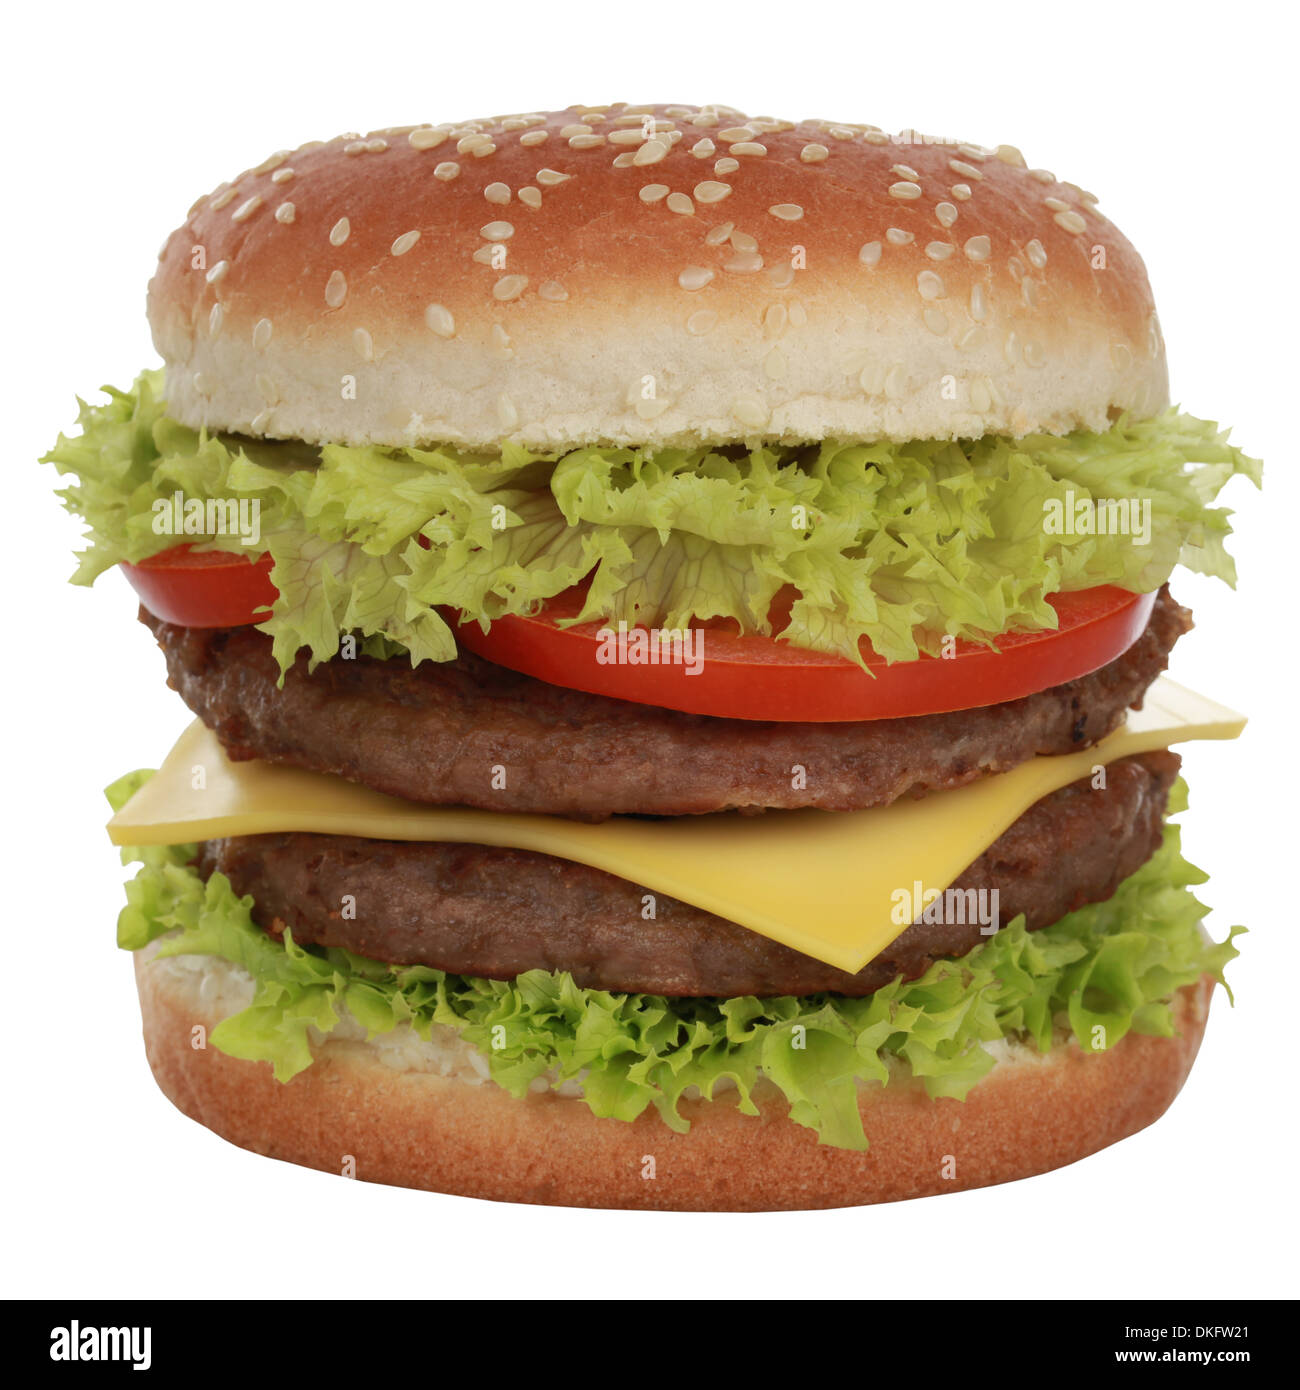 Doppio Cheeseburger con carne di manzo, pomodori, lattuga e formaggio, isolato su bianco Foto Stock